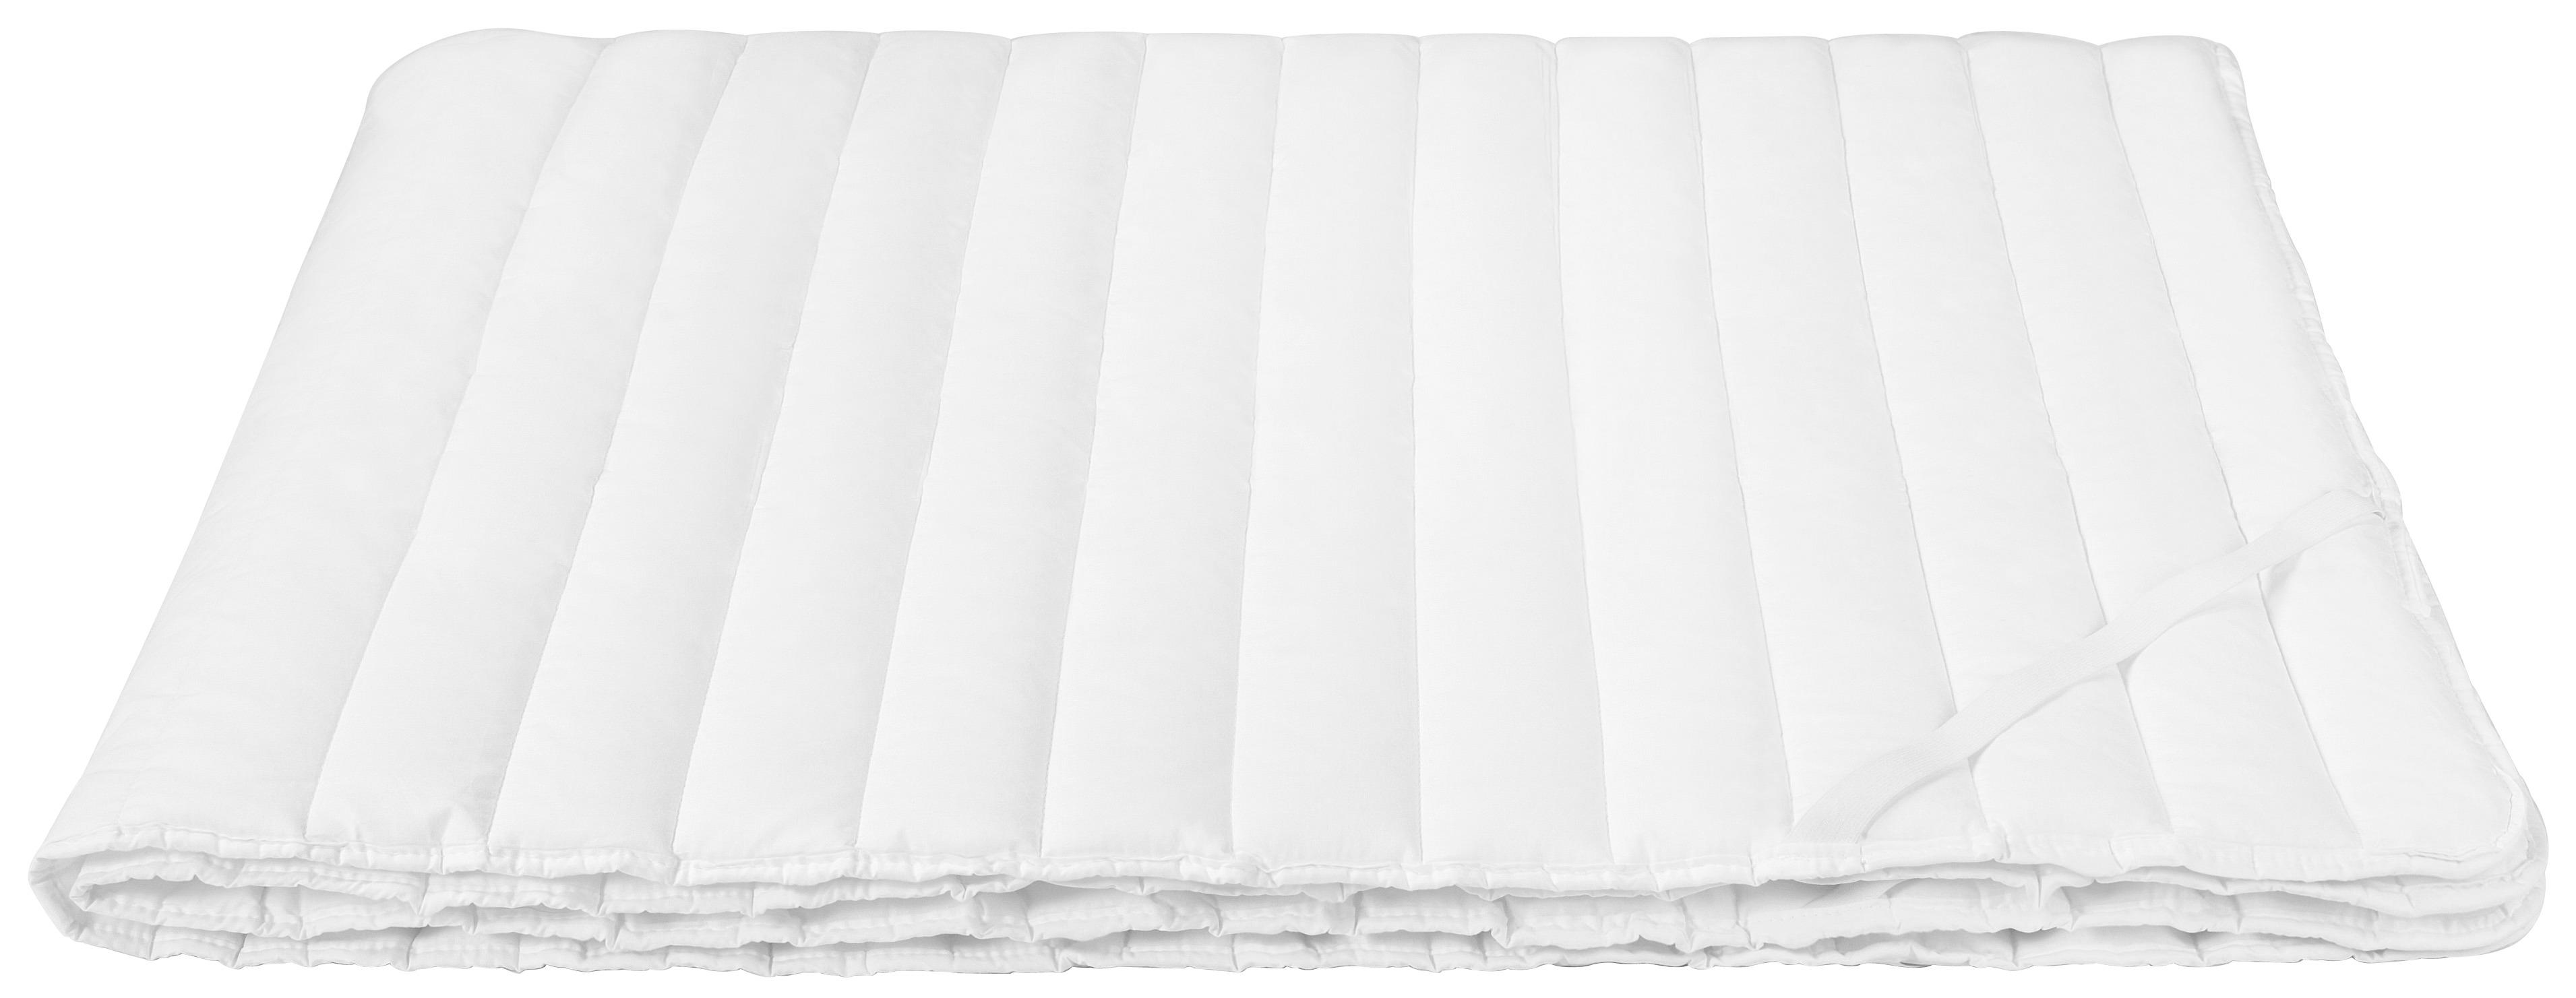 Unterbett Bianca BxL: 140x200 cm - Weiß, KONVENTIONELL, Textil (140/200cm) - Ele